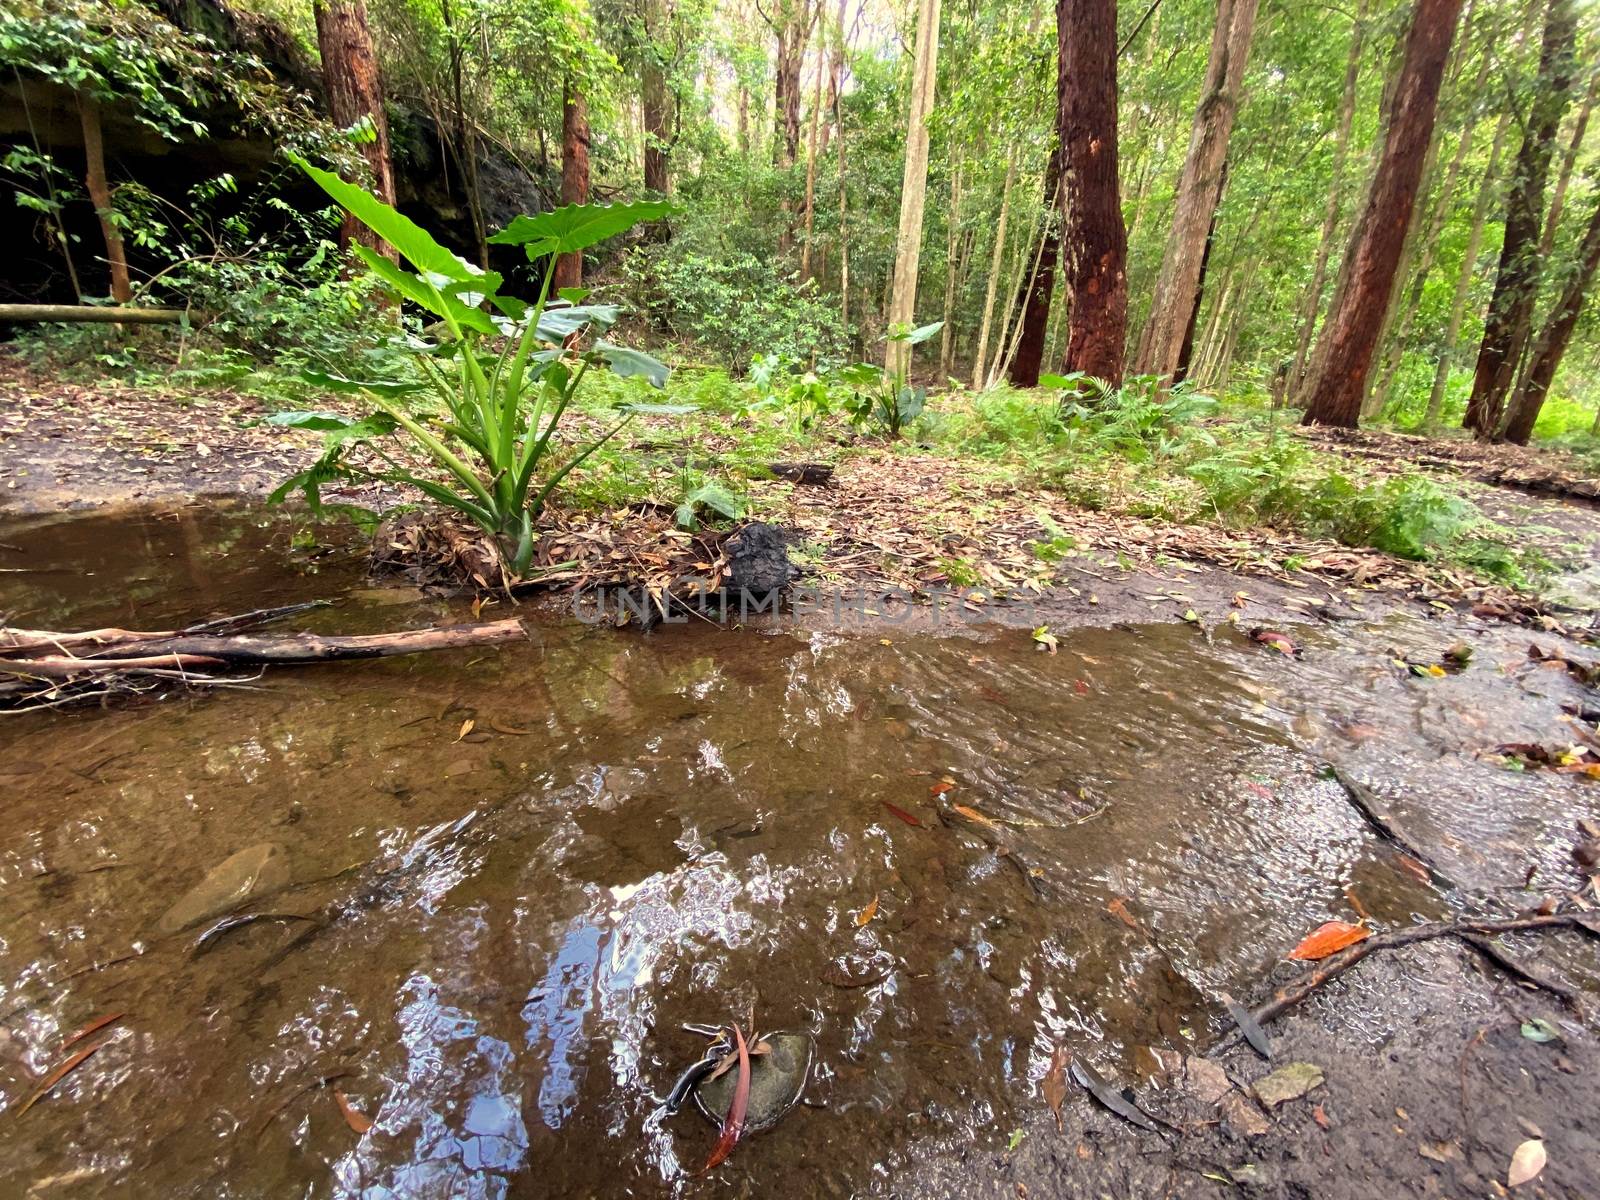 A pieceful creek in an Australian rainforest by Binikins